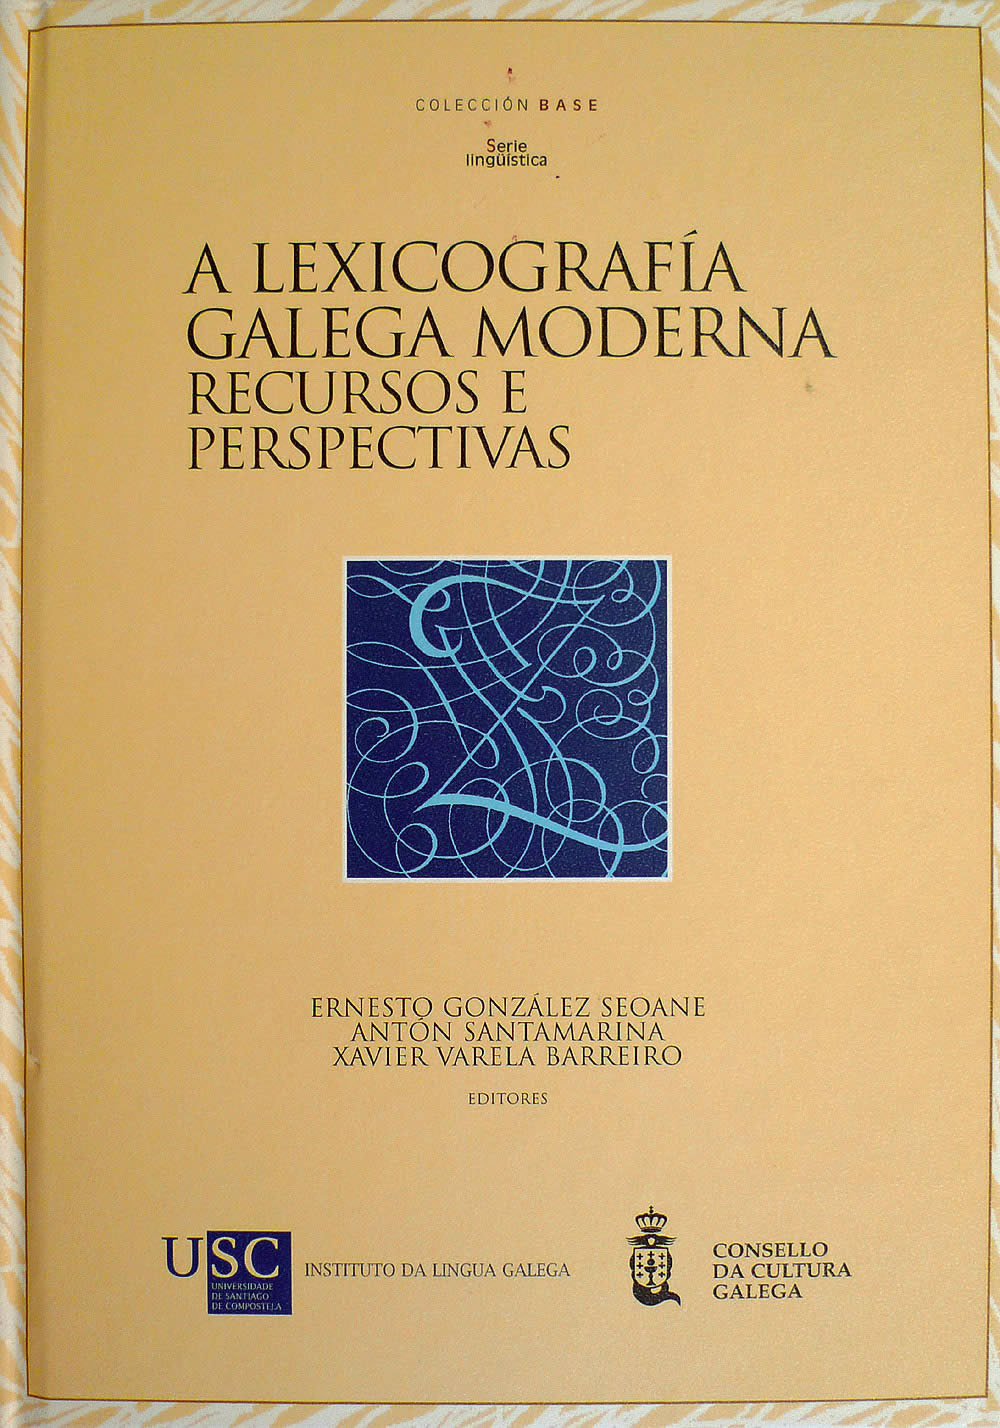 Imagen de portada del libro A lexicografía galega moderna